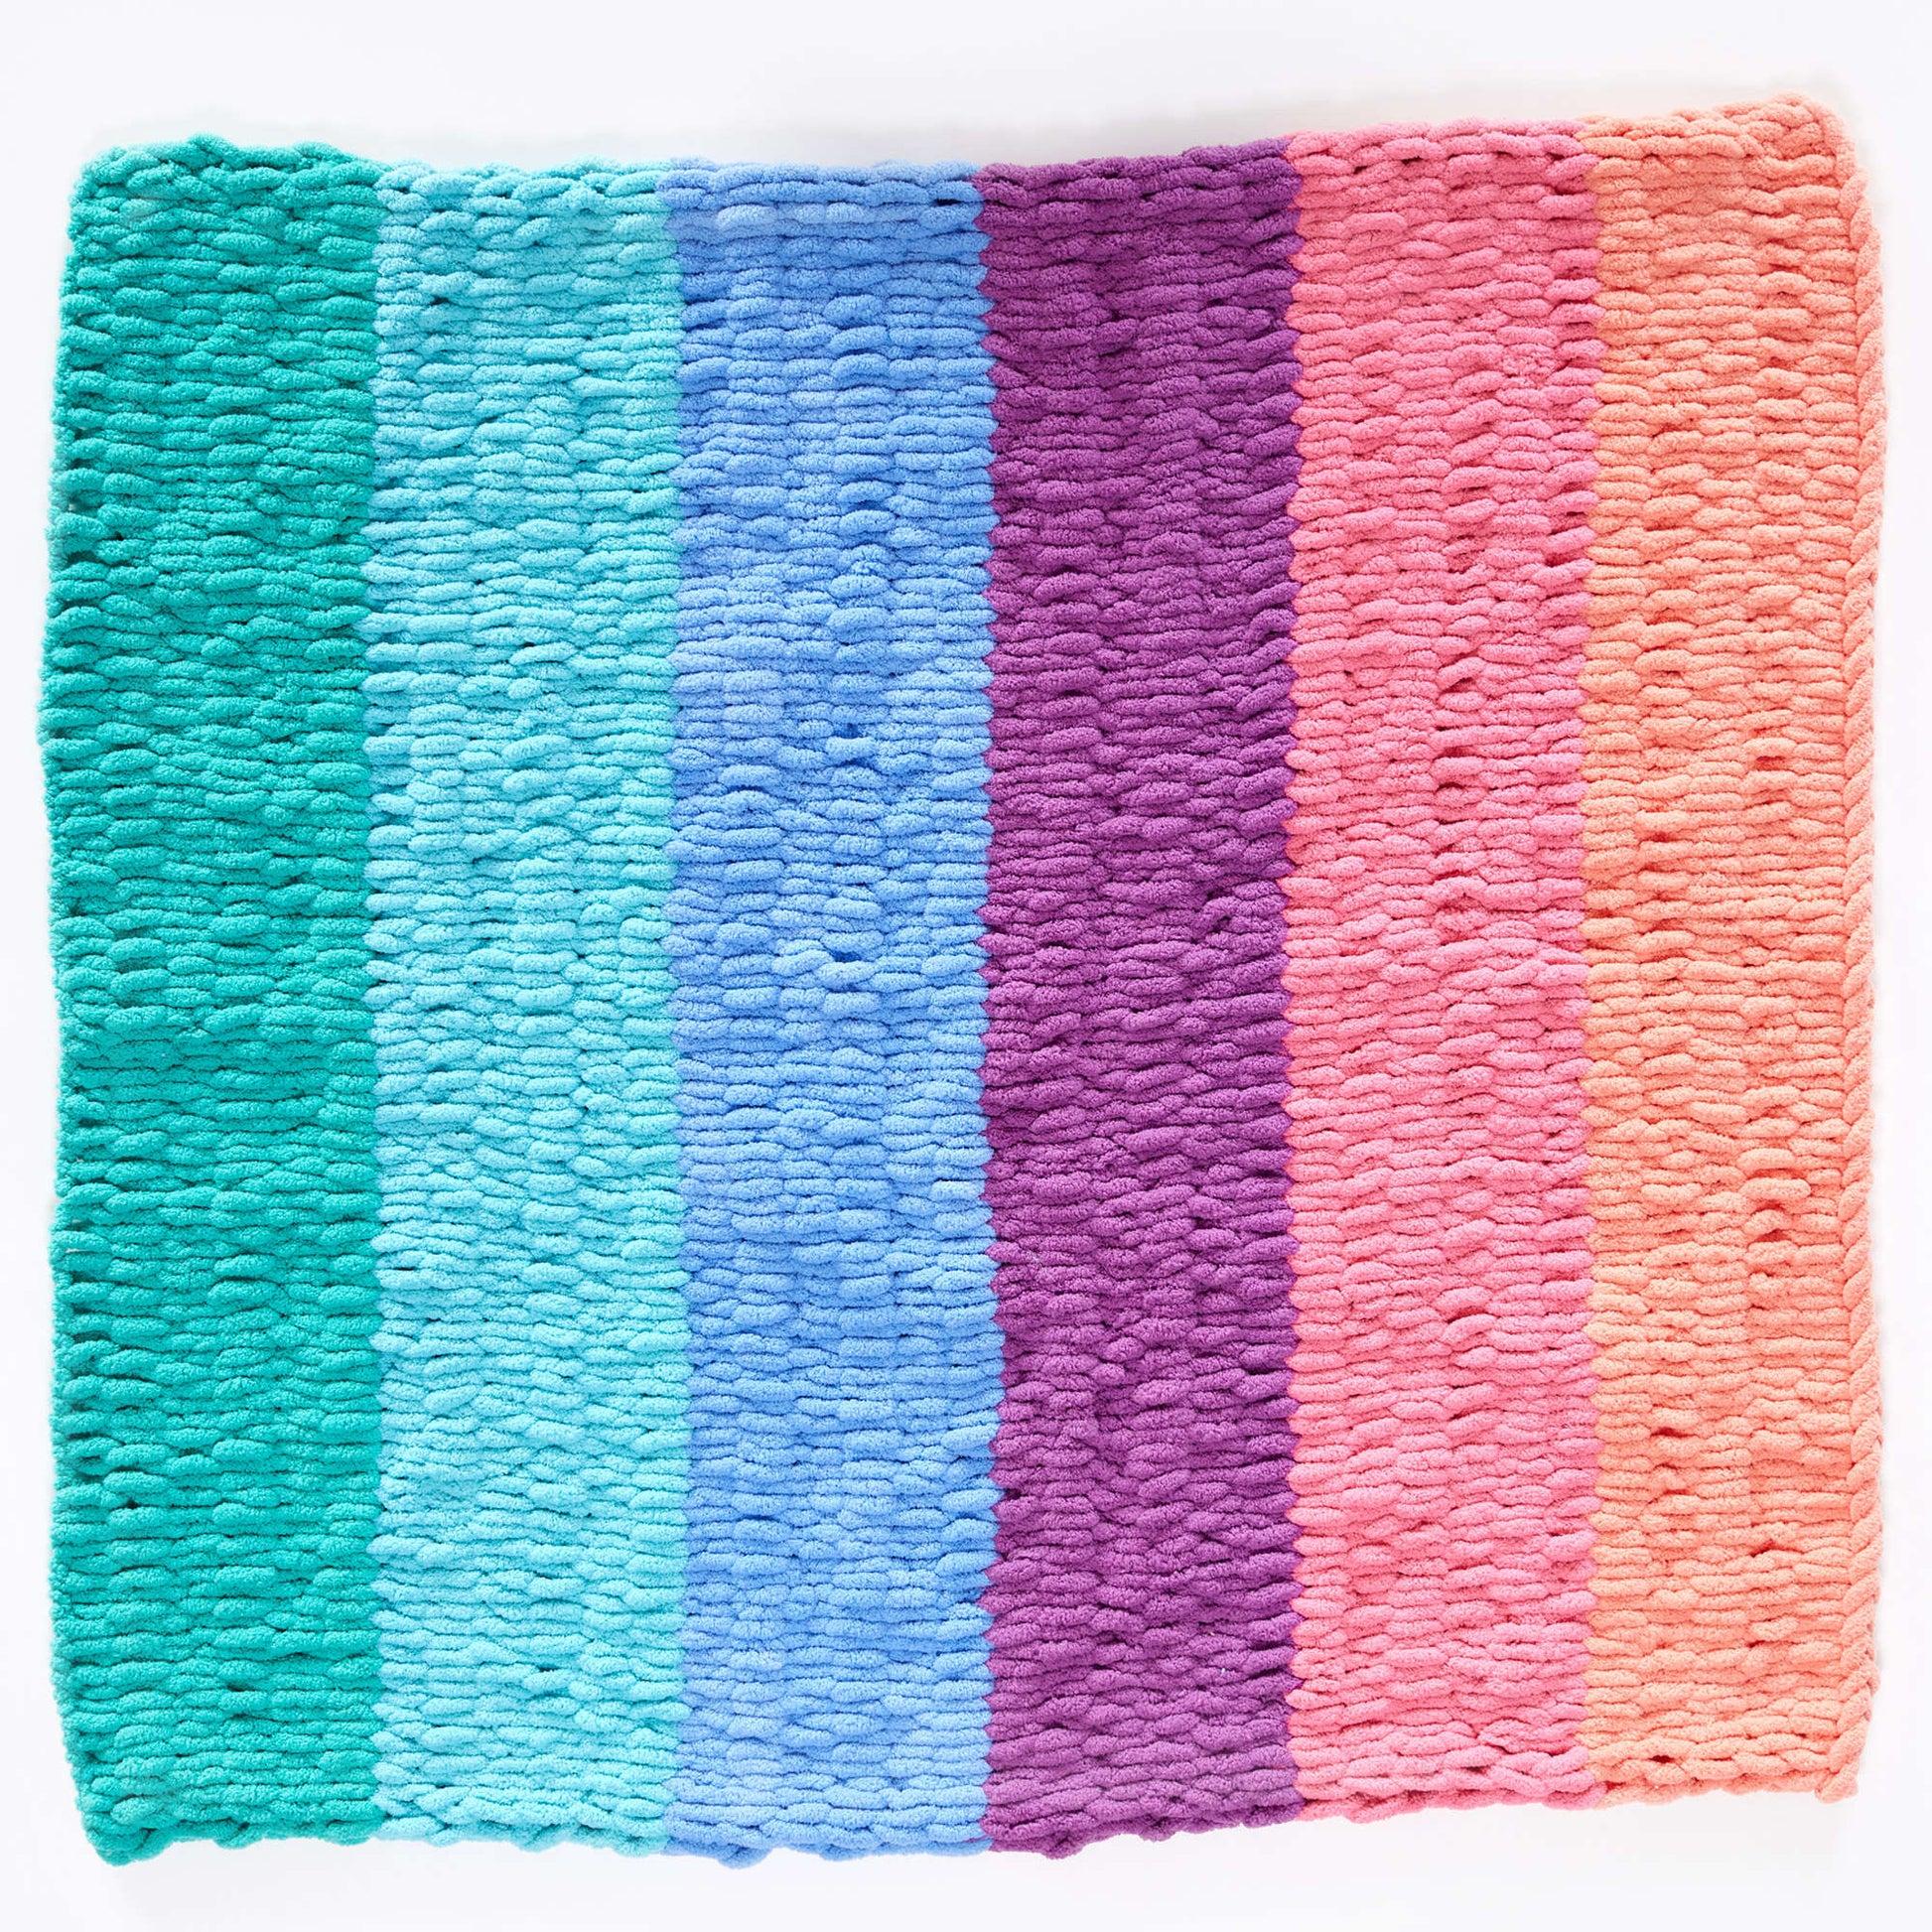 Free Red Heart Craft Loop-It Rainbow Blanket Pattern